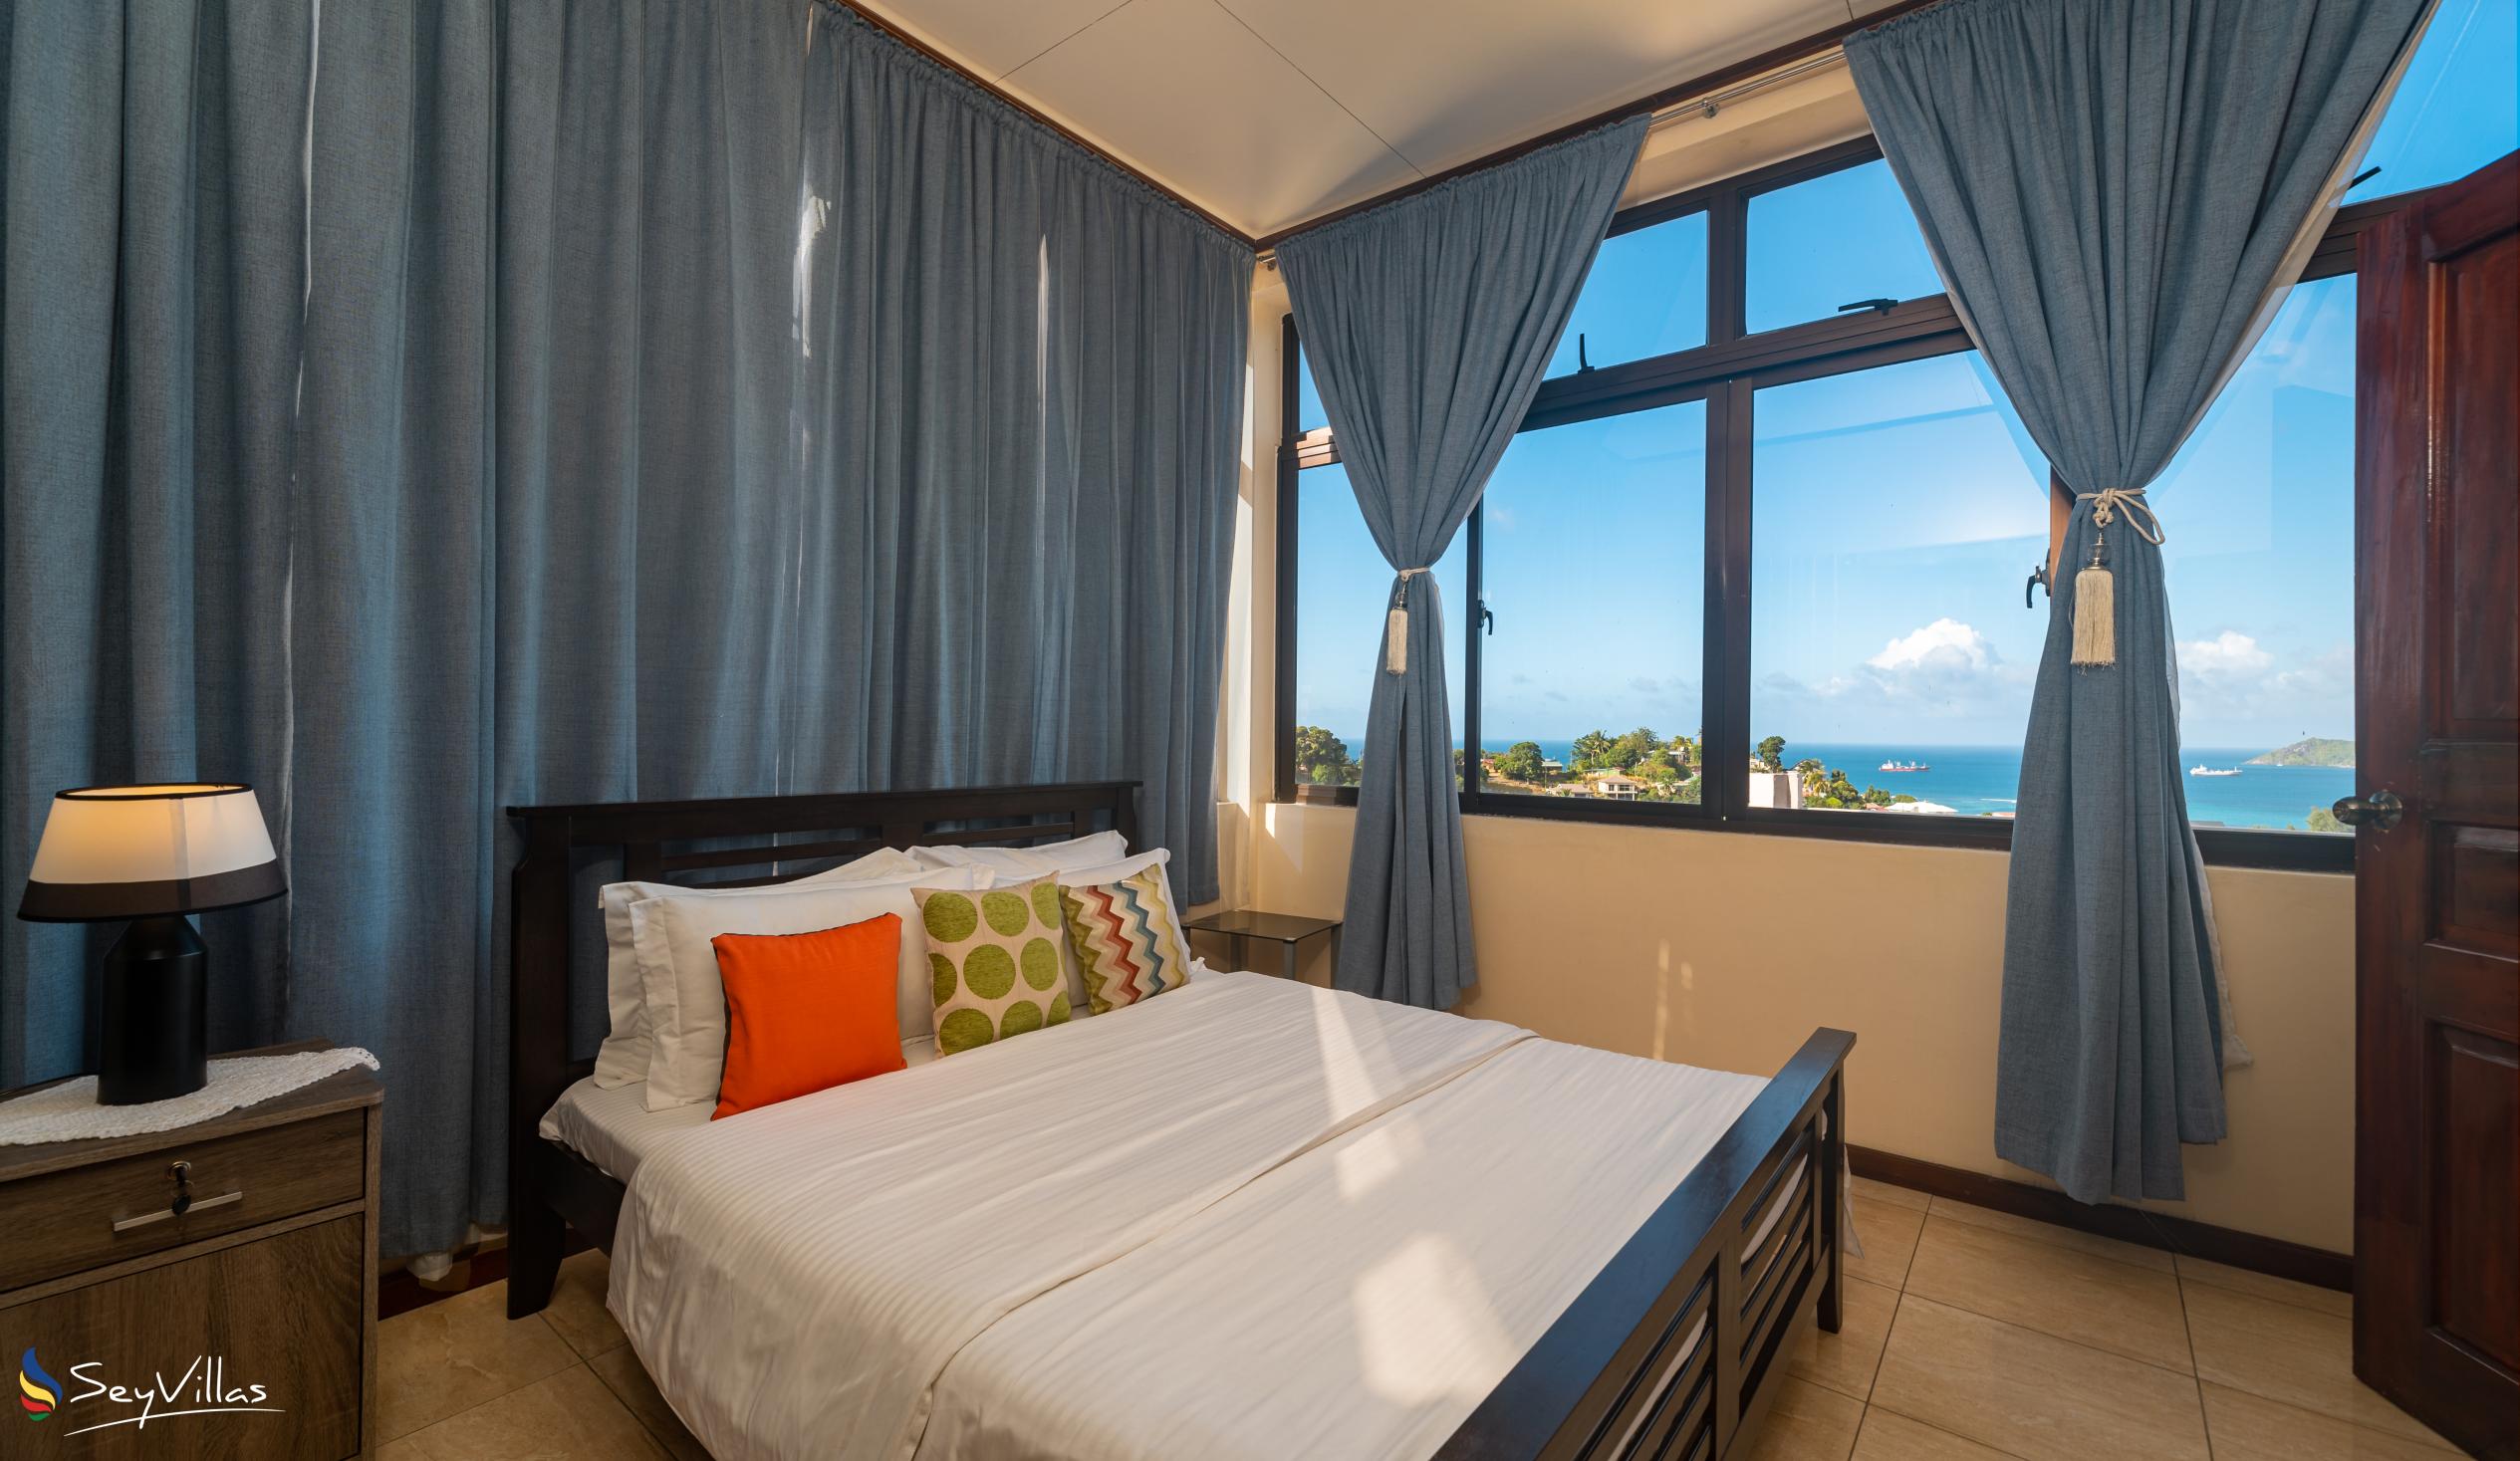 Foto 81: Maison L'Horizon - Appartamento con 3 camere Lorizon - Mahé (Seychelles)